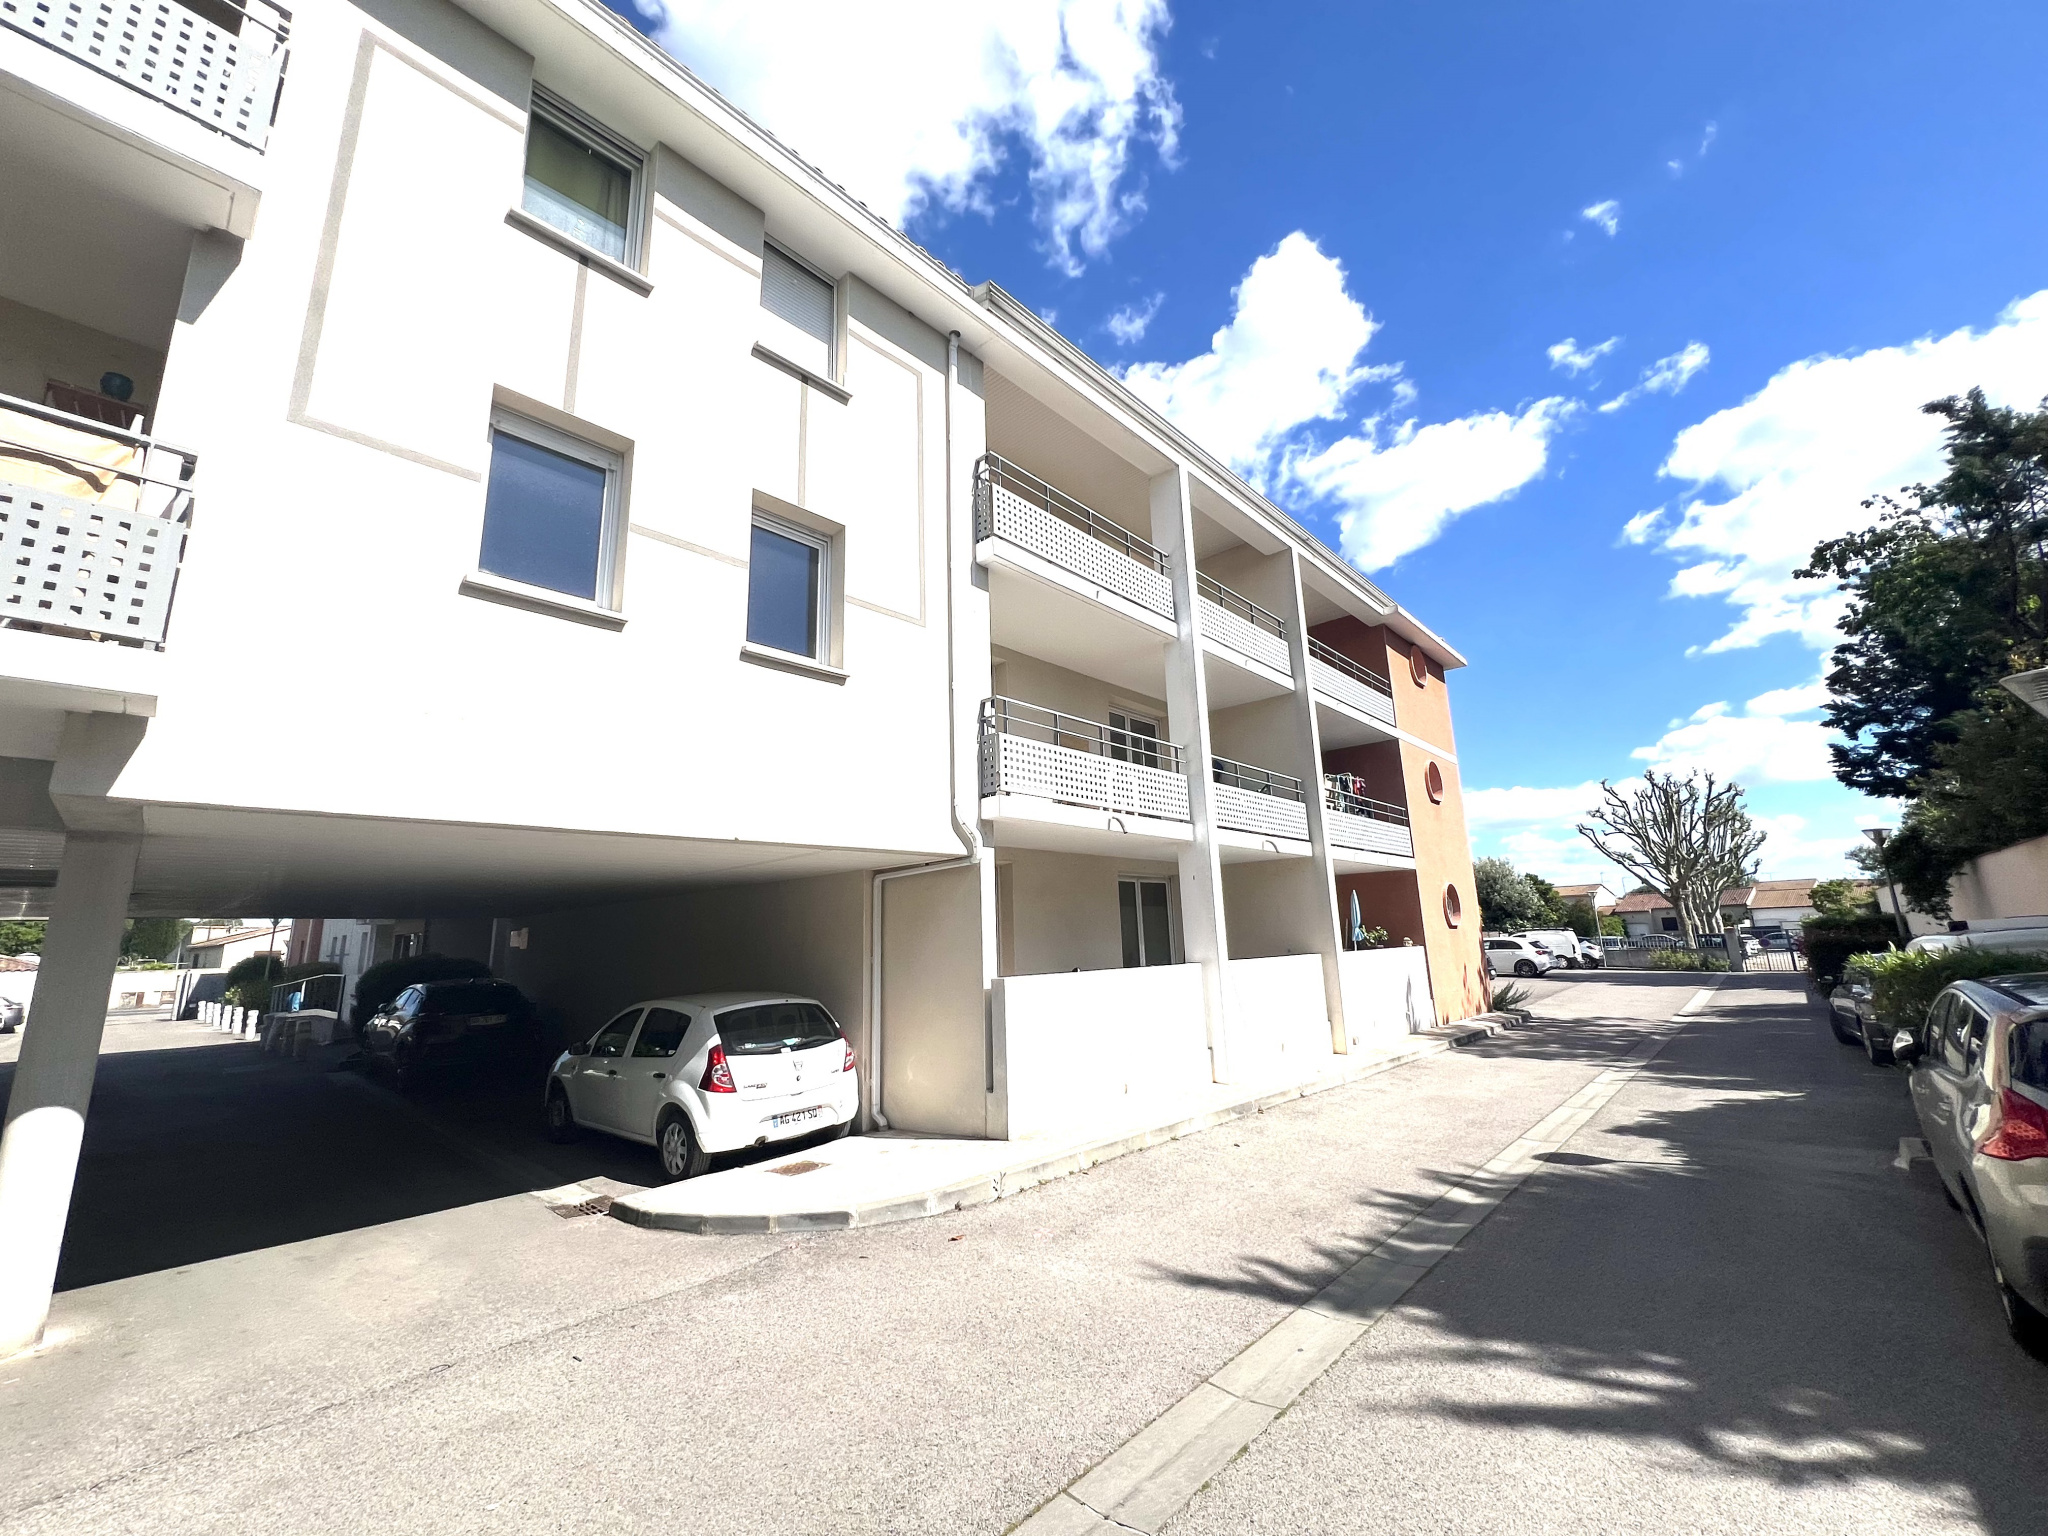 Vente Appartement 69m² 3 Pièces à Lunel (34400) - Réseau Expertimo